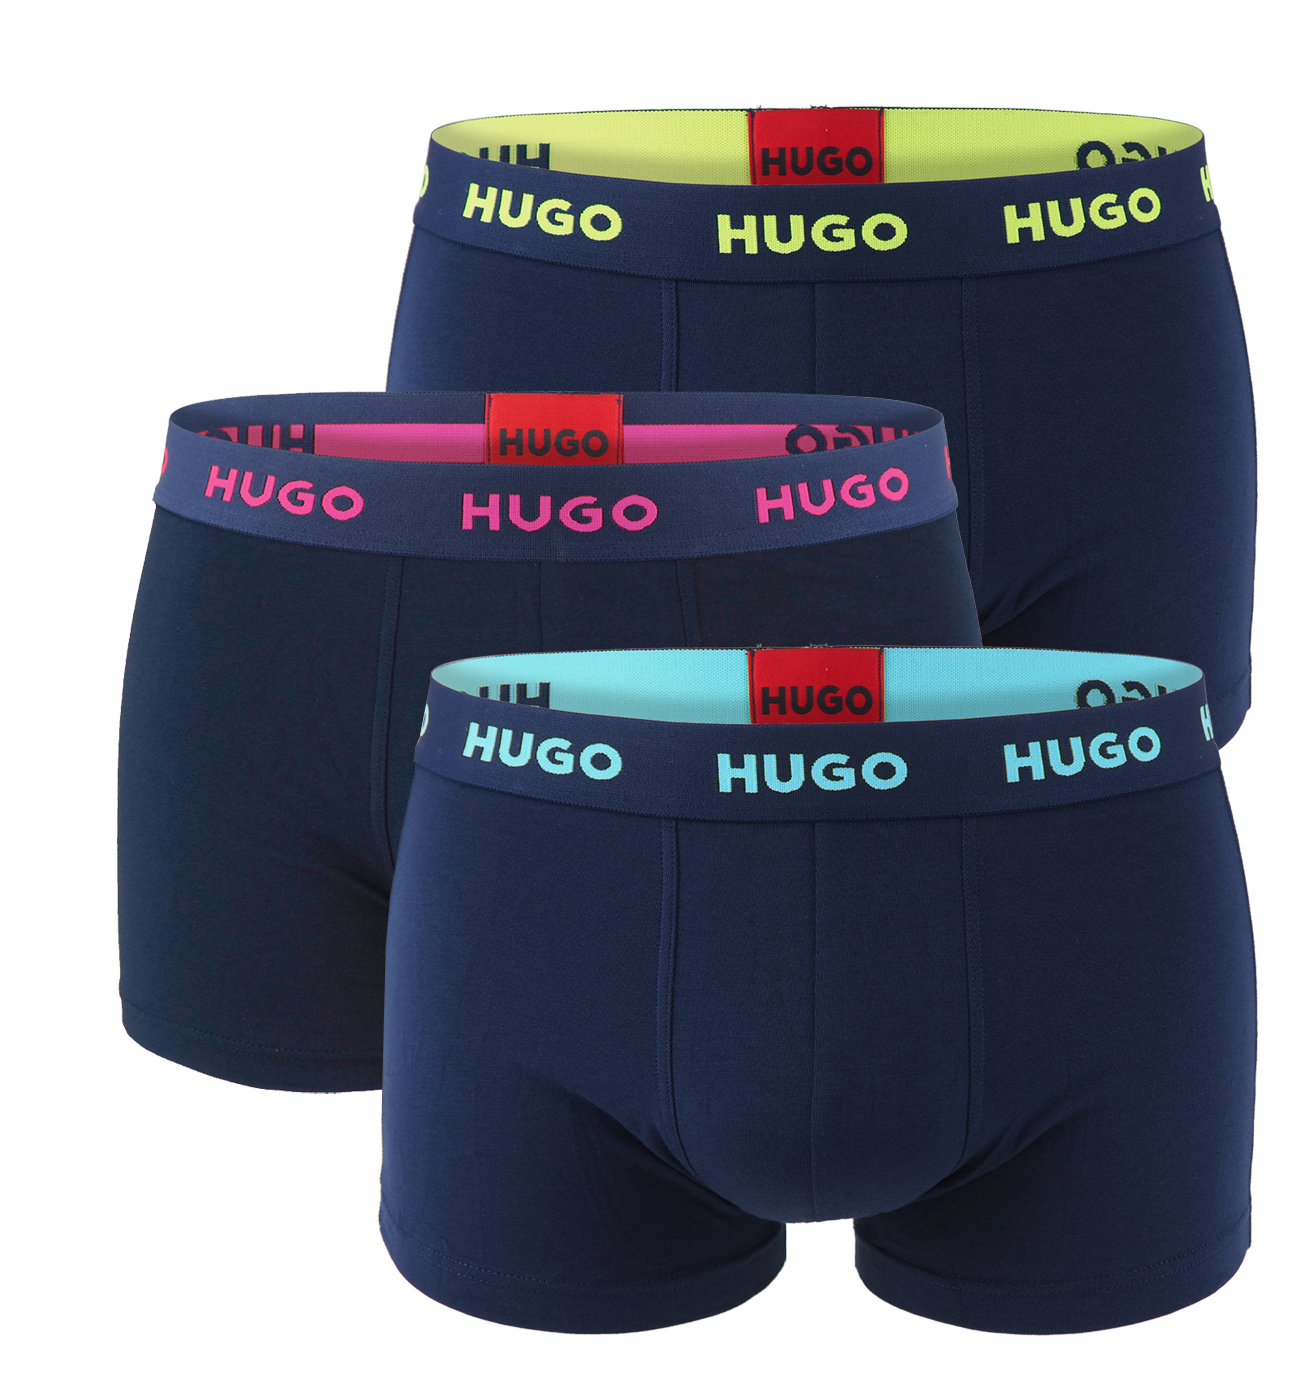 HUGO - boxer 3 csomag pamut stretch sötétkék sokszínű logó derék - limitált divatkiadás (HUGO BOSS)